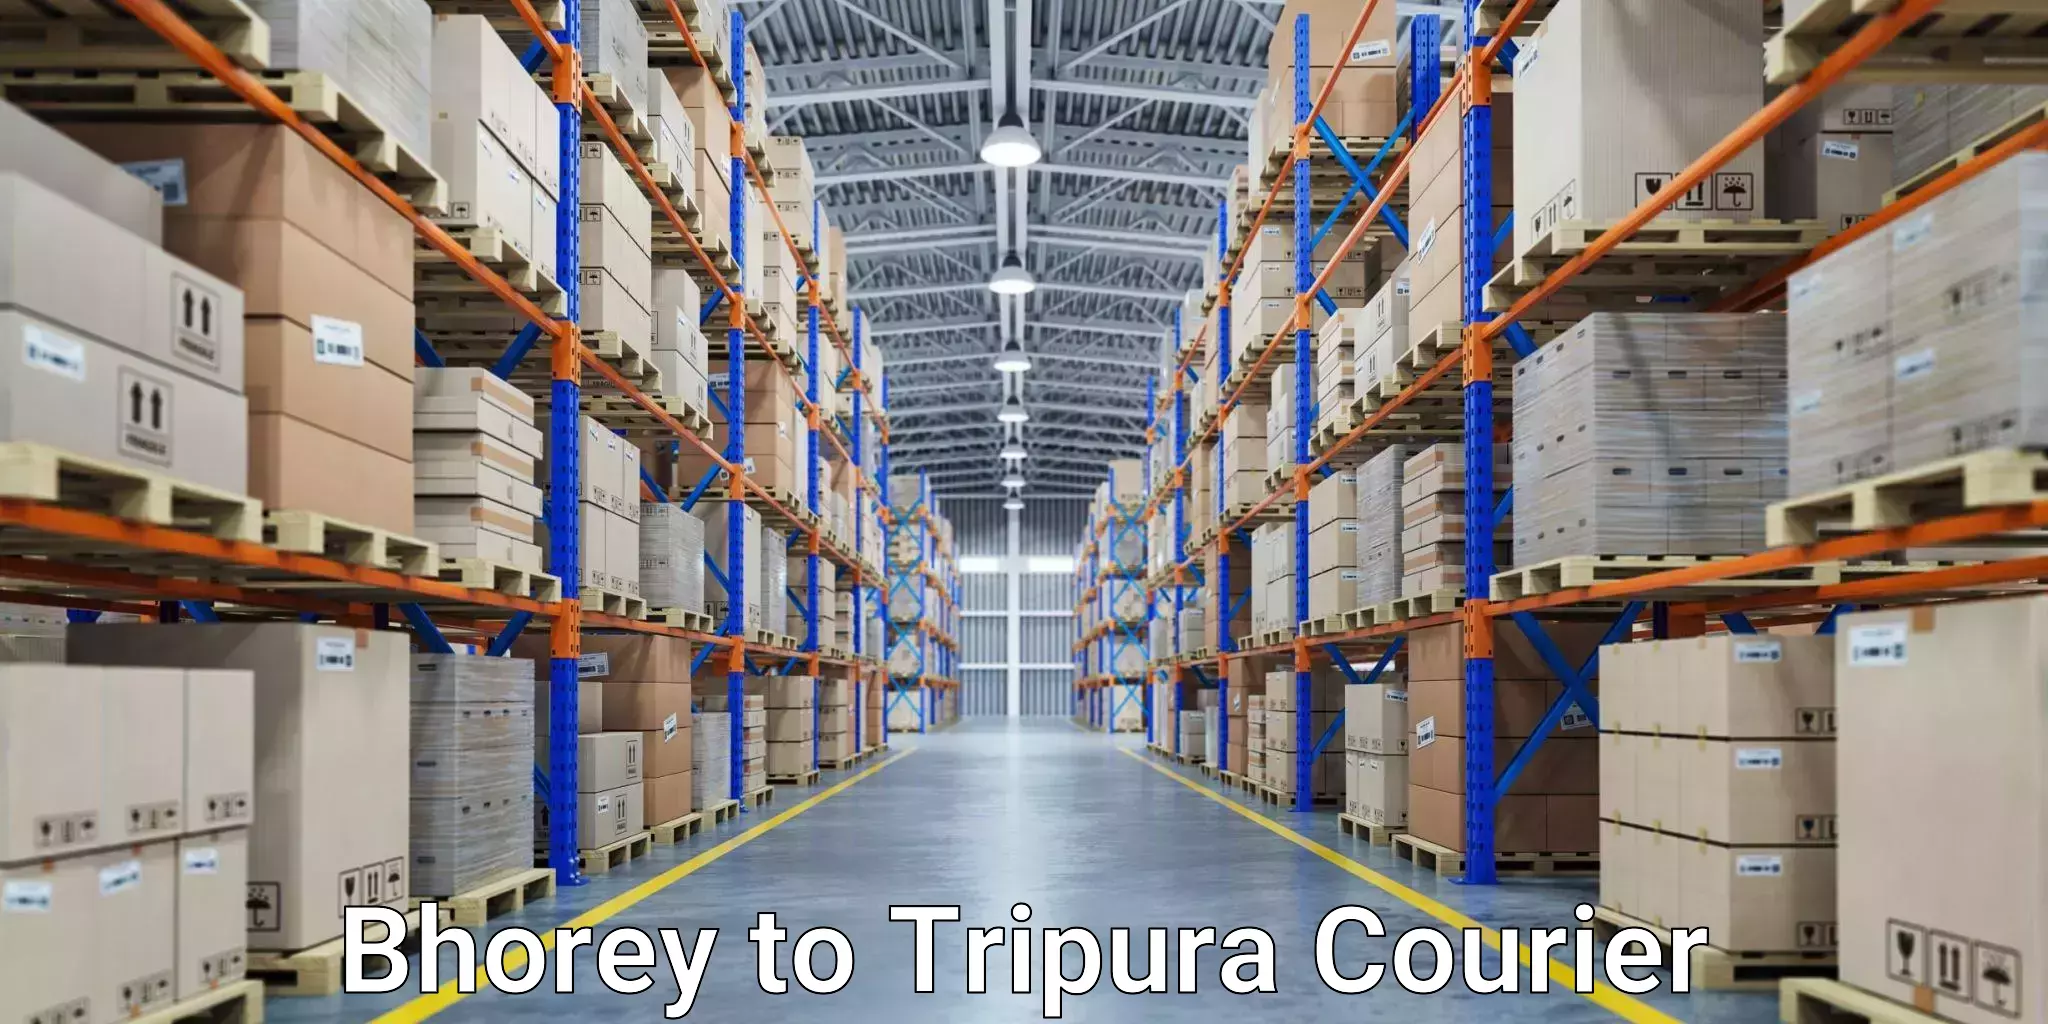 Pharmaceutical courier Bhorey to Tripura